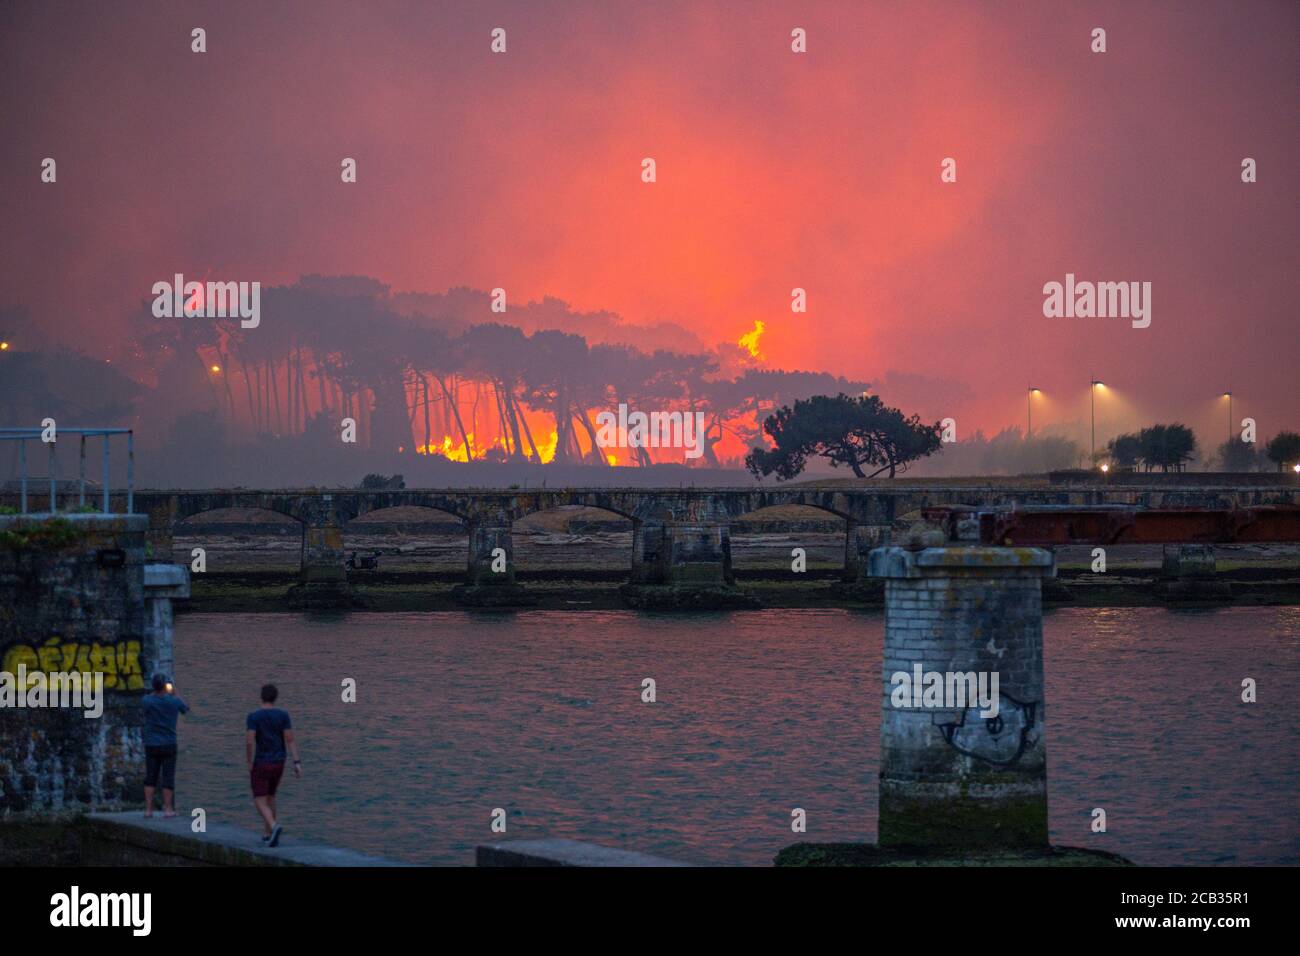 Chiberta arson bosque el 2020 de julio de 30. El incendio devastó 165 hectáreas de bosque y quemó 11 casas en el corazón de Anglet. Fuego salvaje. Blaze. Foto de stock